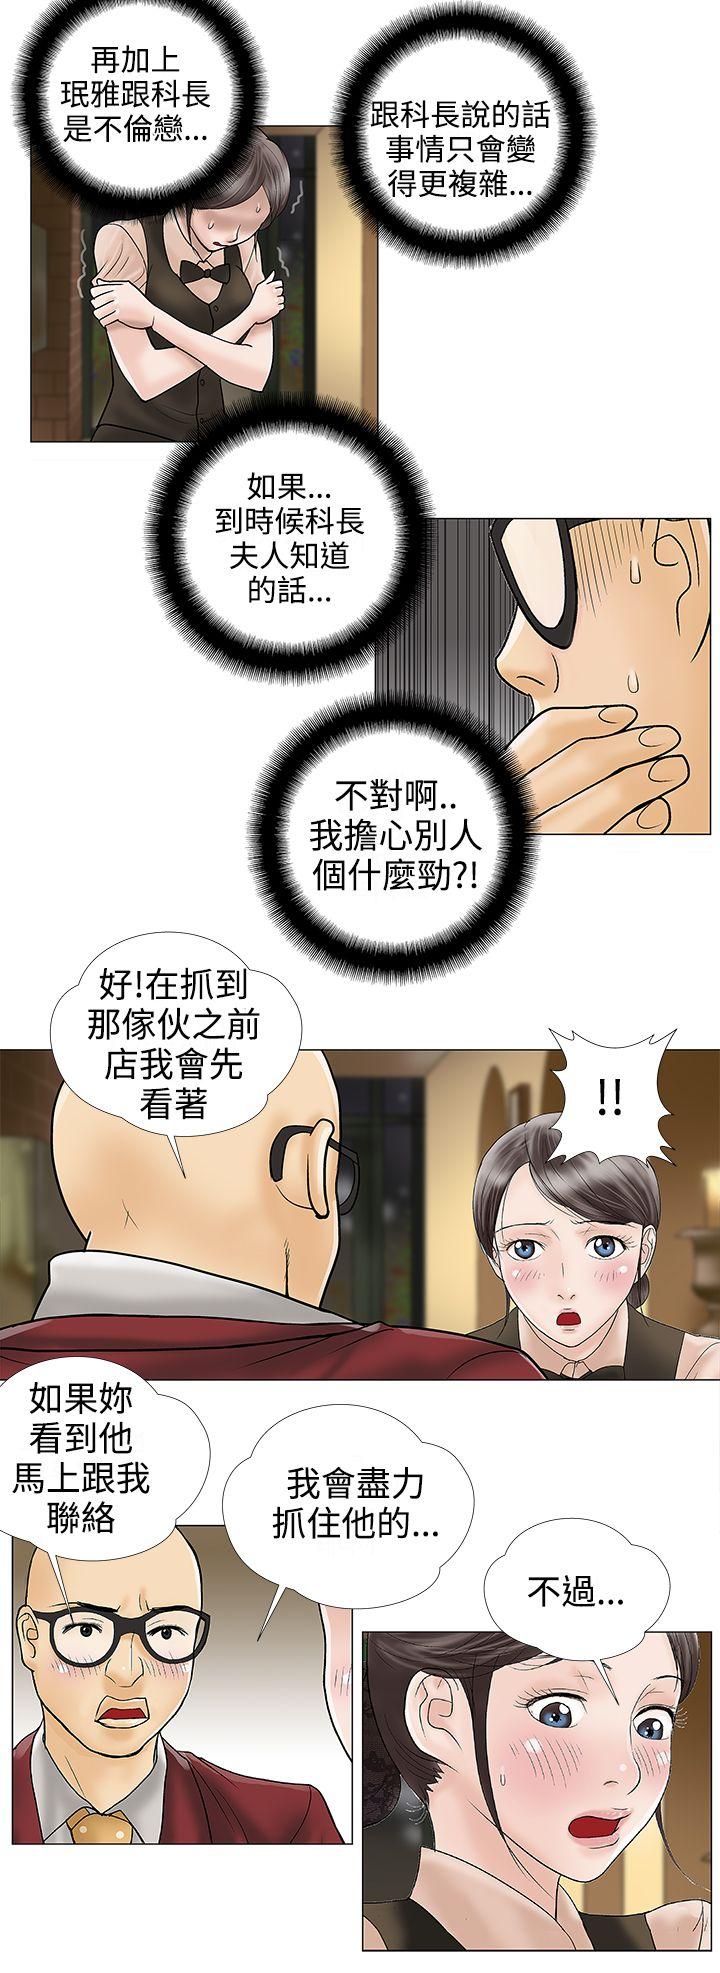 危险的爱(完结)  第25话 漫画图片2.jpg